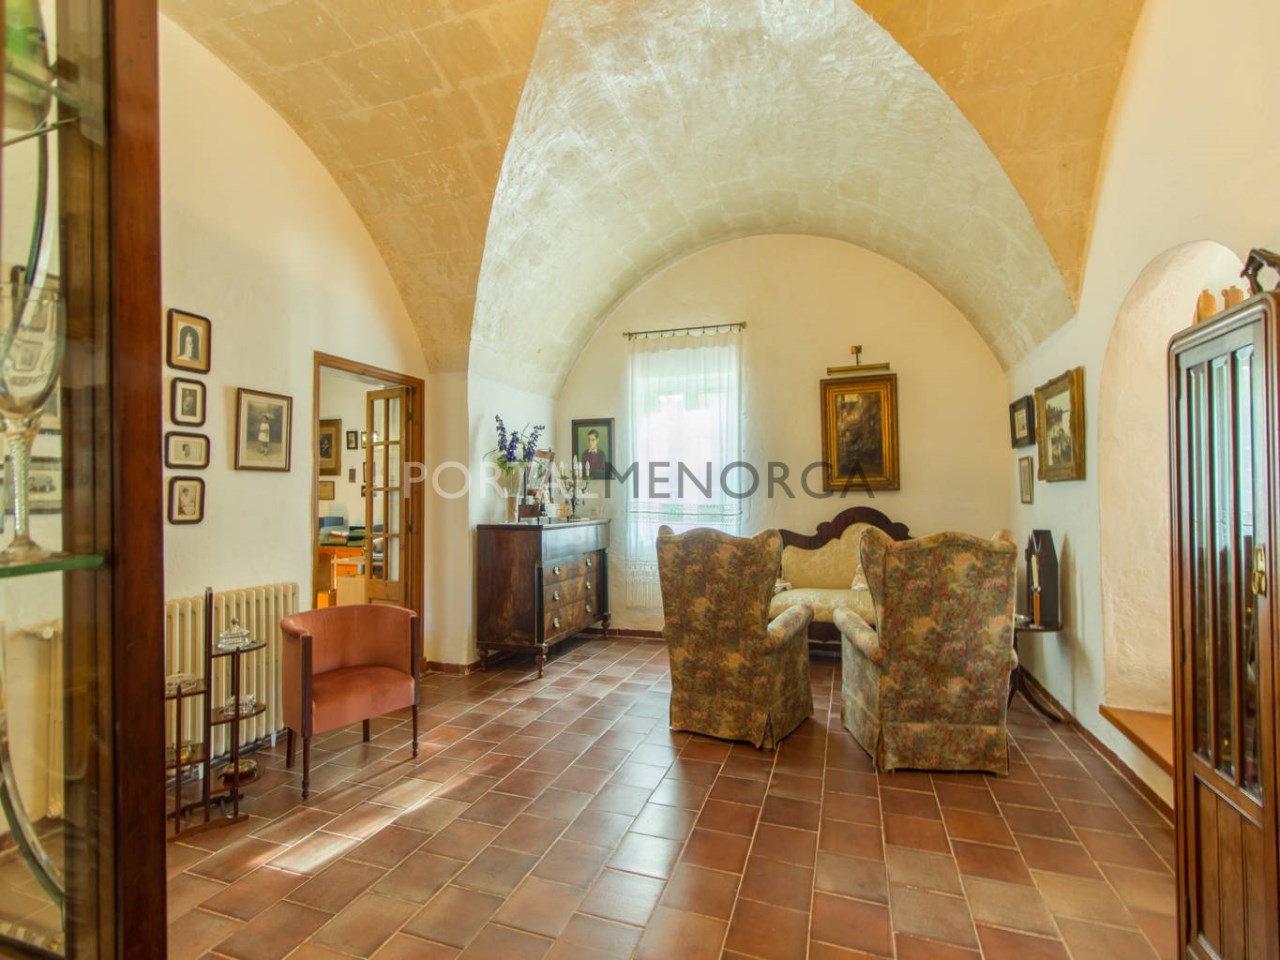 Casa de campo en venta en Menorca - Planta baja (9)